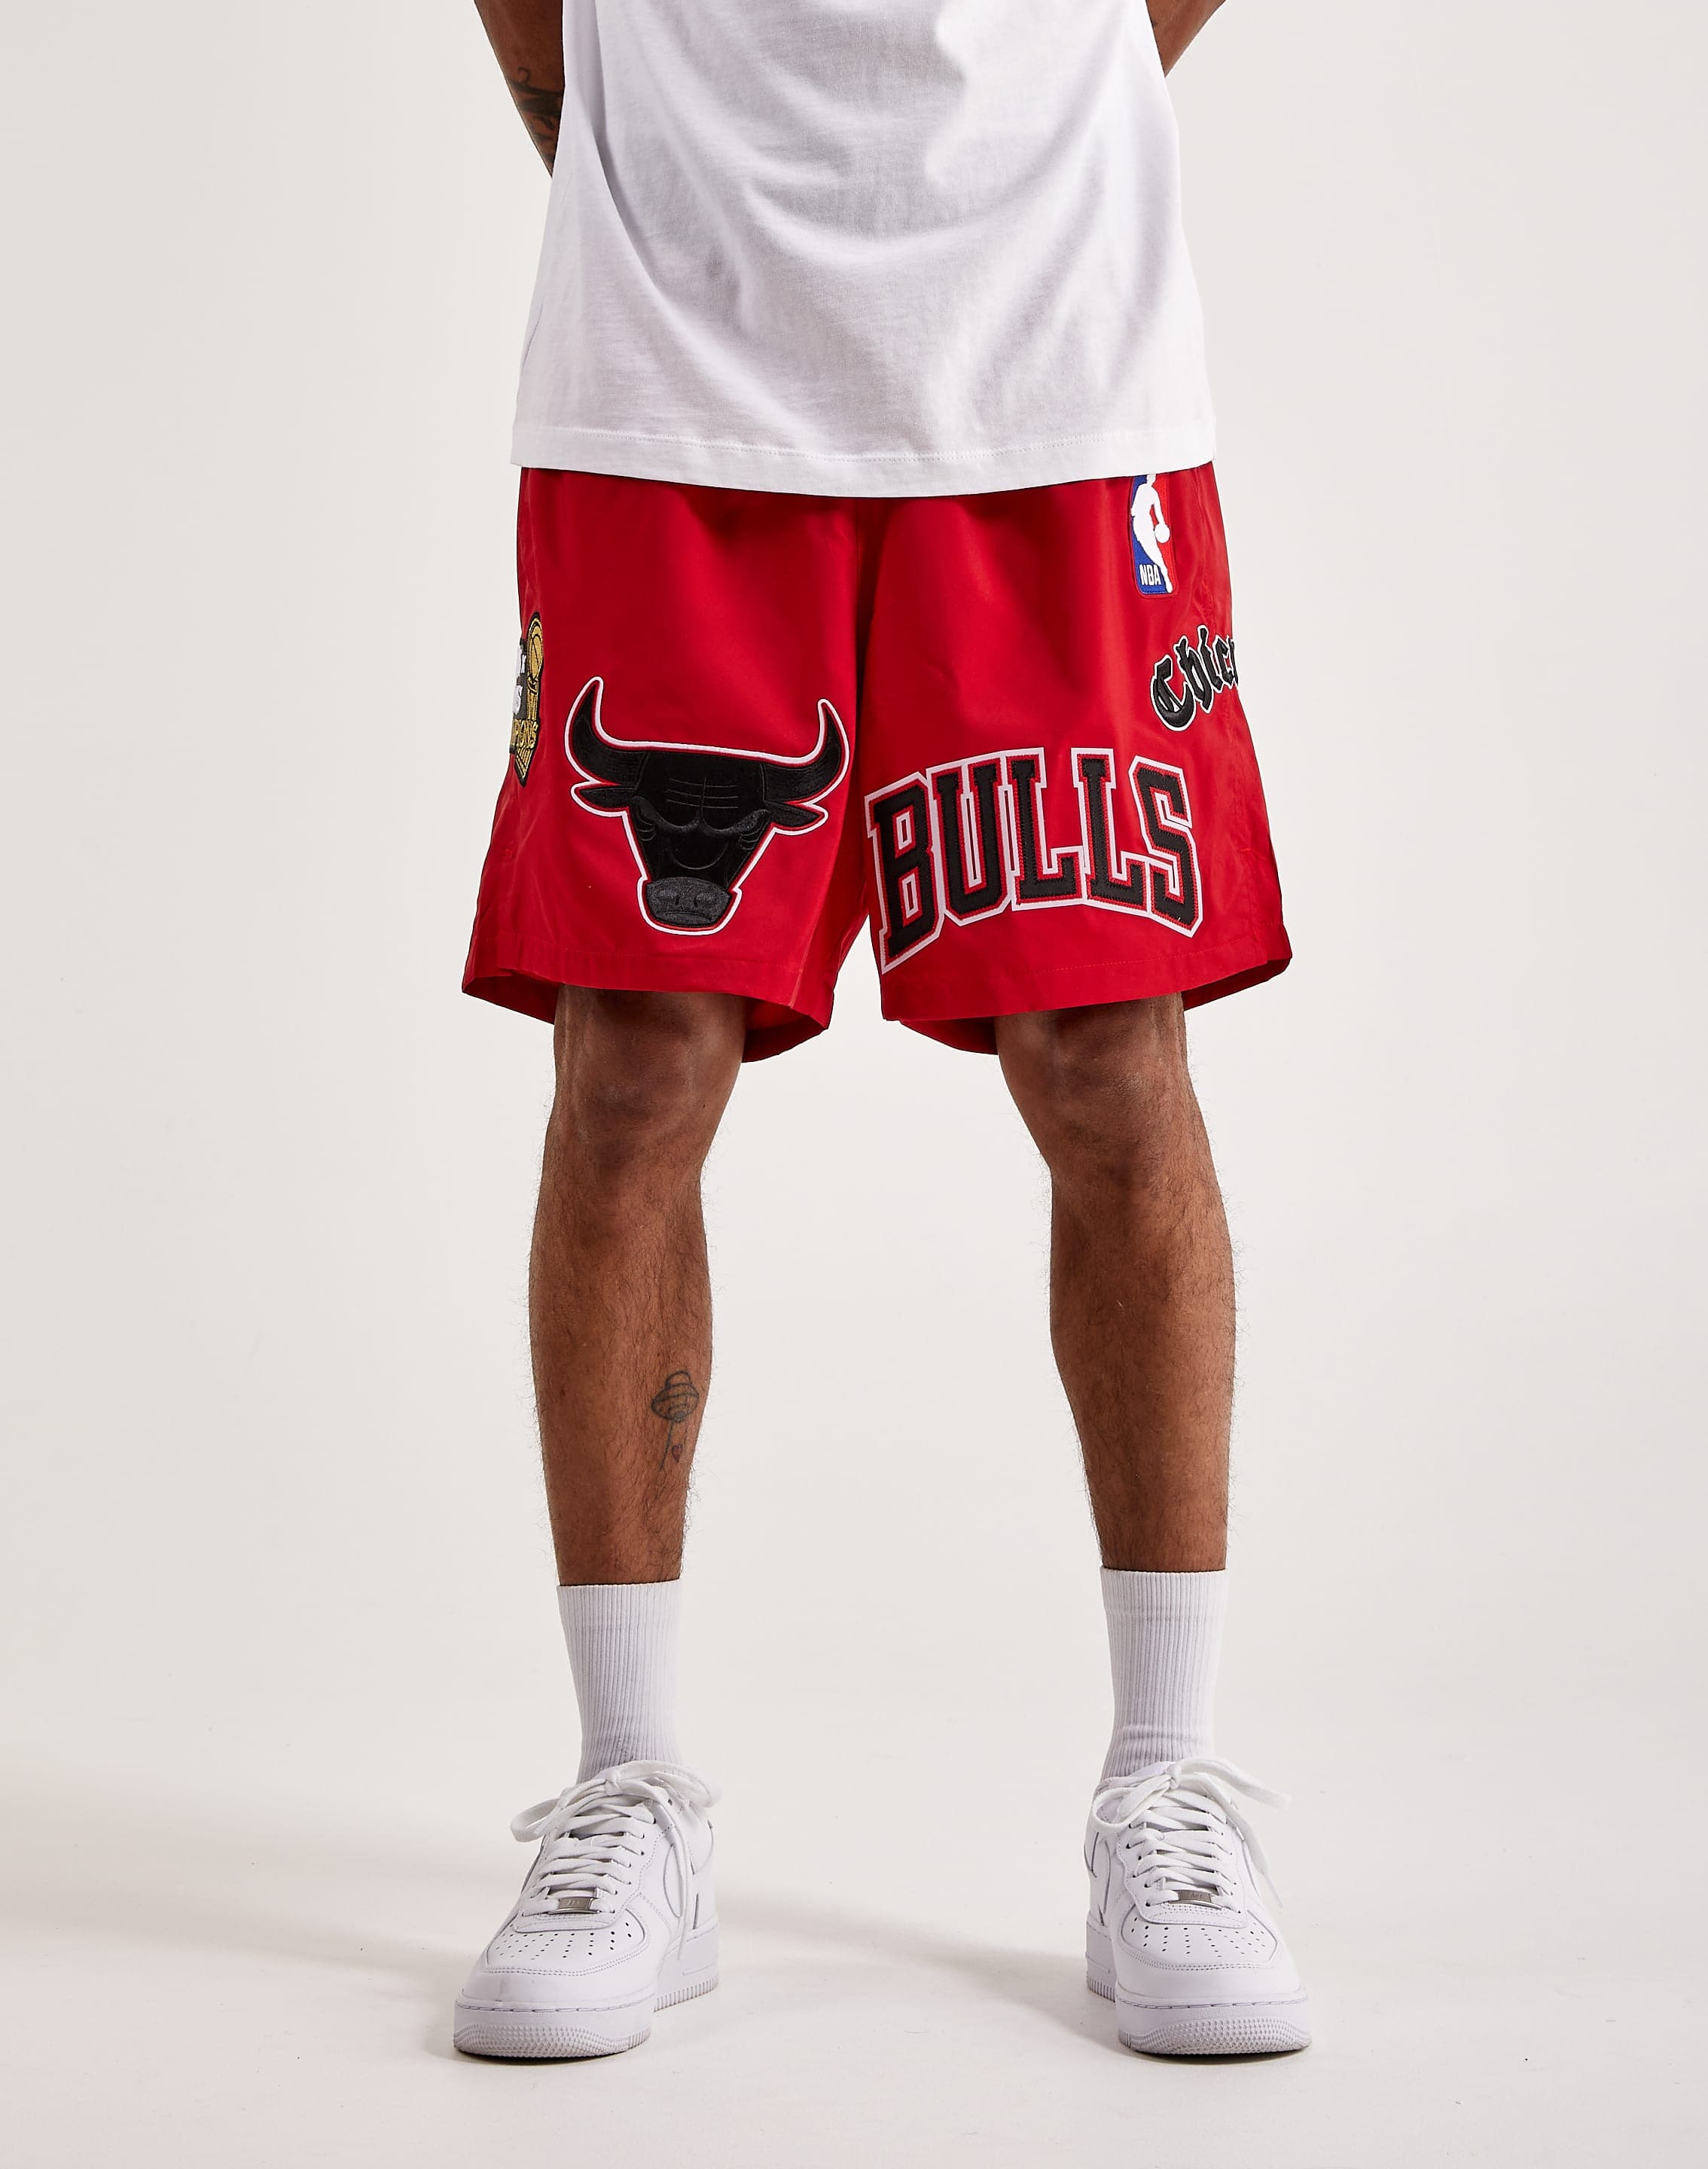 bulls shorts